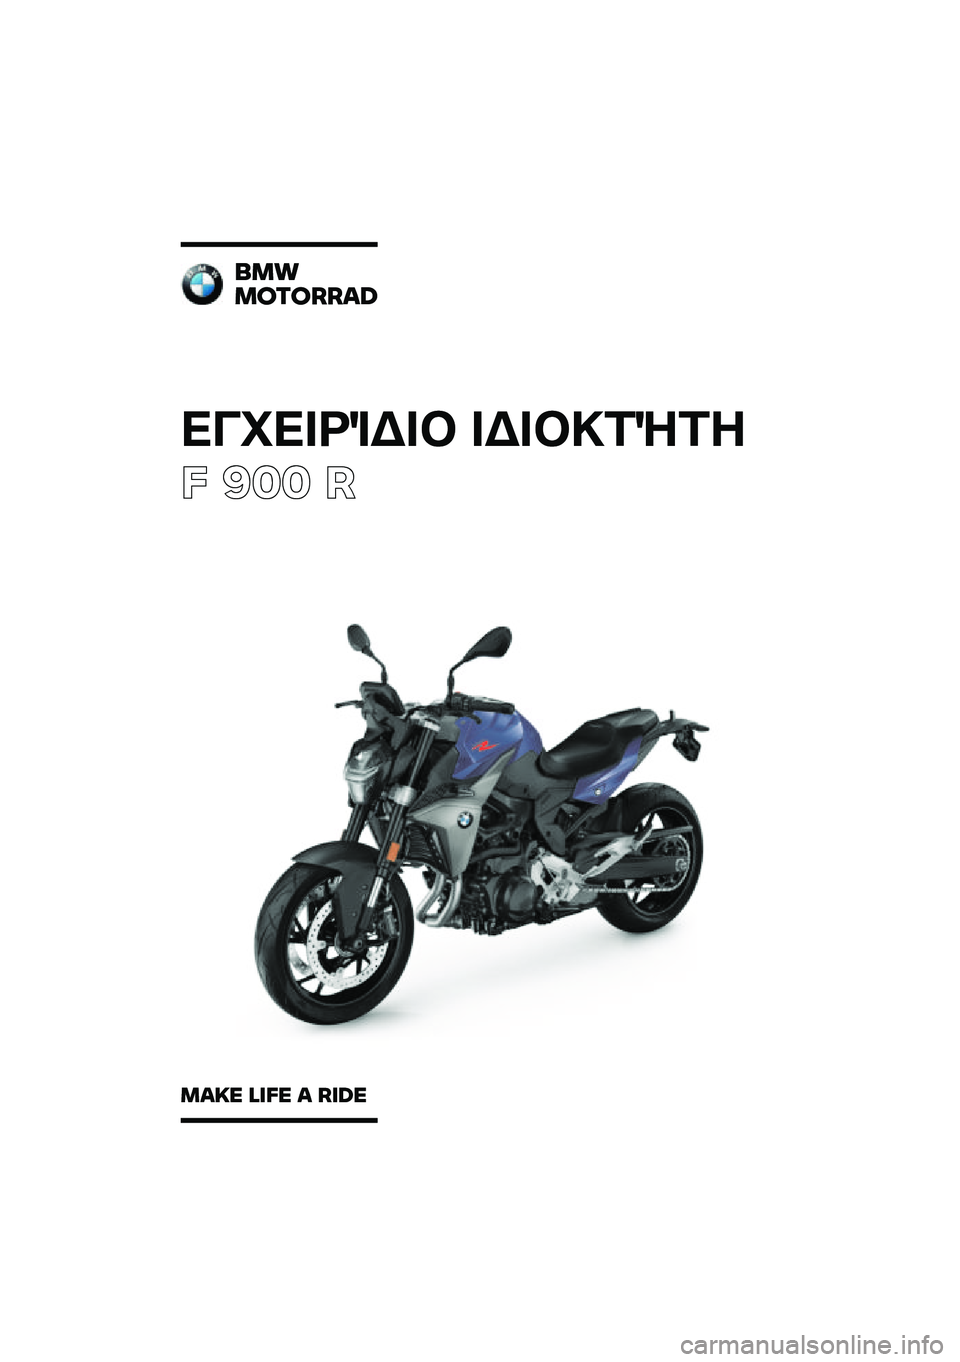 BMW MOTORRAD F 900 R 2020  Εγχειρίδιο ιδιοκτήτη (in Greek) ��������\b��	 ��\b��	�
��\f��
� ��� �
���
�������\b�	
��\b�
� �\f�
�� �\b ��
�	� 